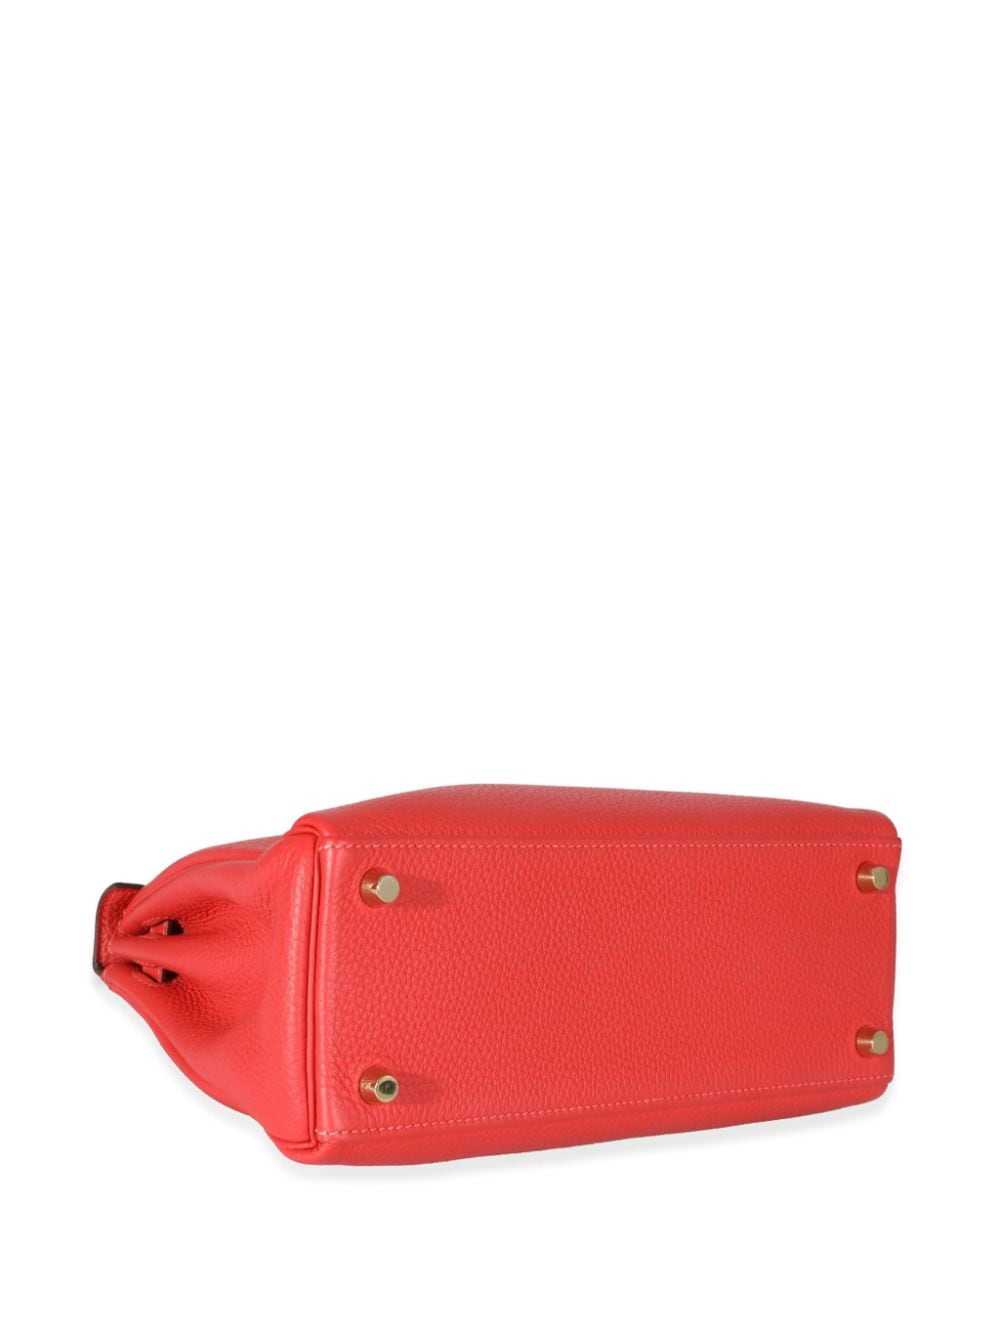 Hermès Pre-Owned 2014 Kelly 25 handbag - Red - image 3